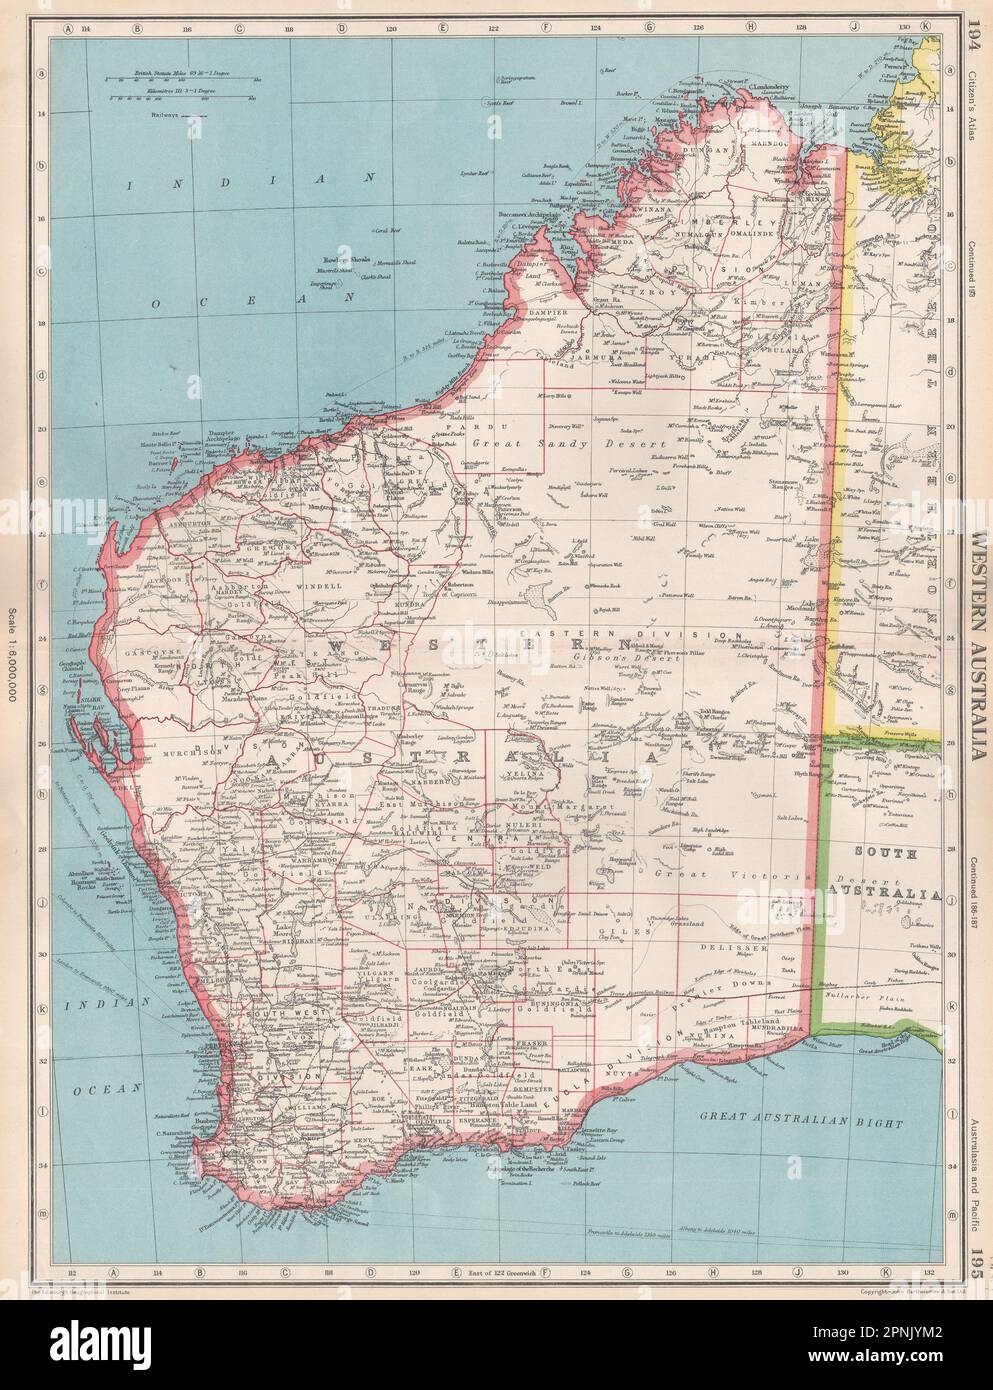 AUSTRALIA OCCIDENTALE. mostra i distretti terrestri e i campi d'oro. MAPPA BARTOLOMEO 1952 Foto Stock